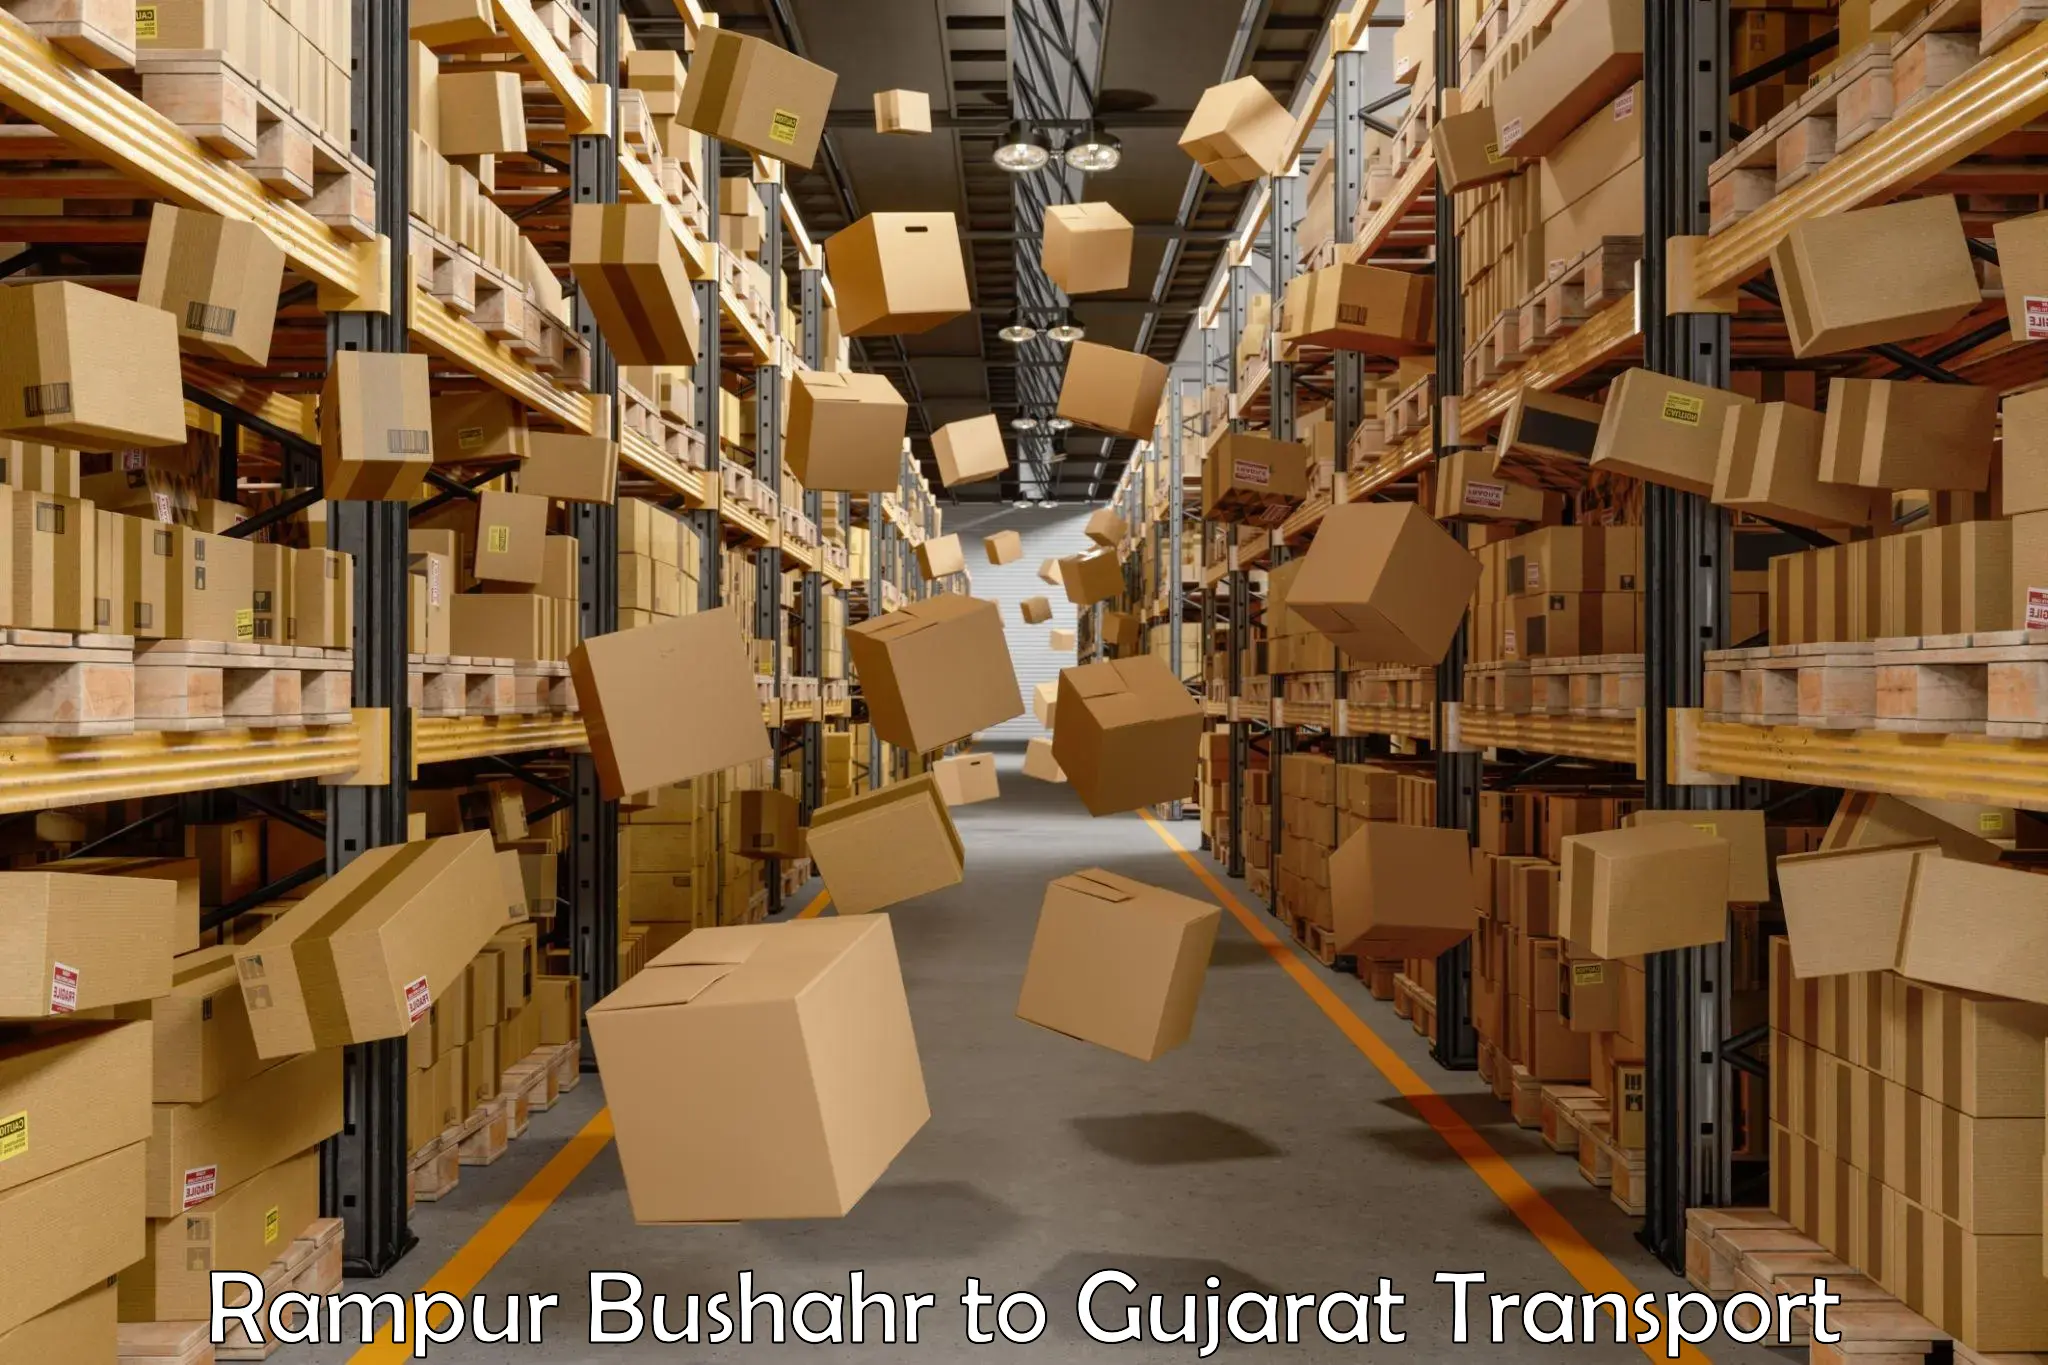 Goods delivery service Rampur Bushahr to Gandhinagar